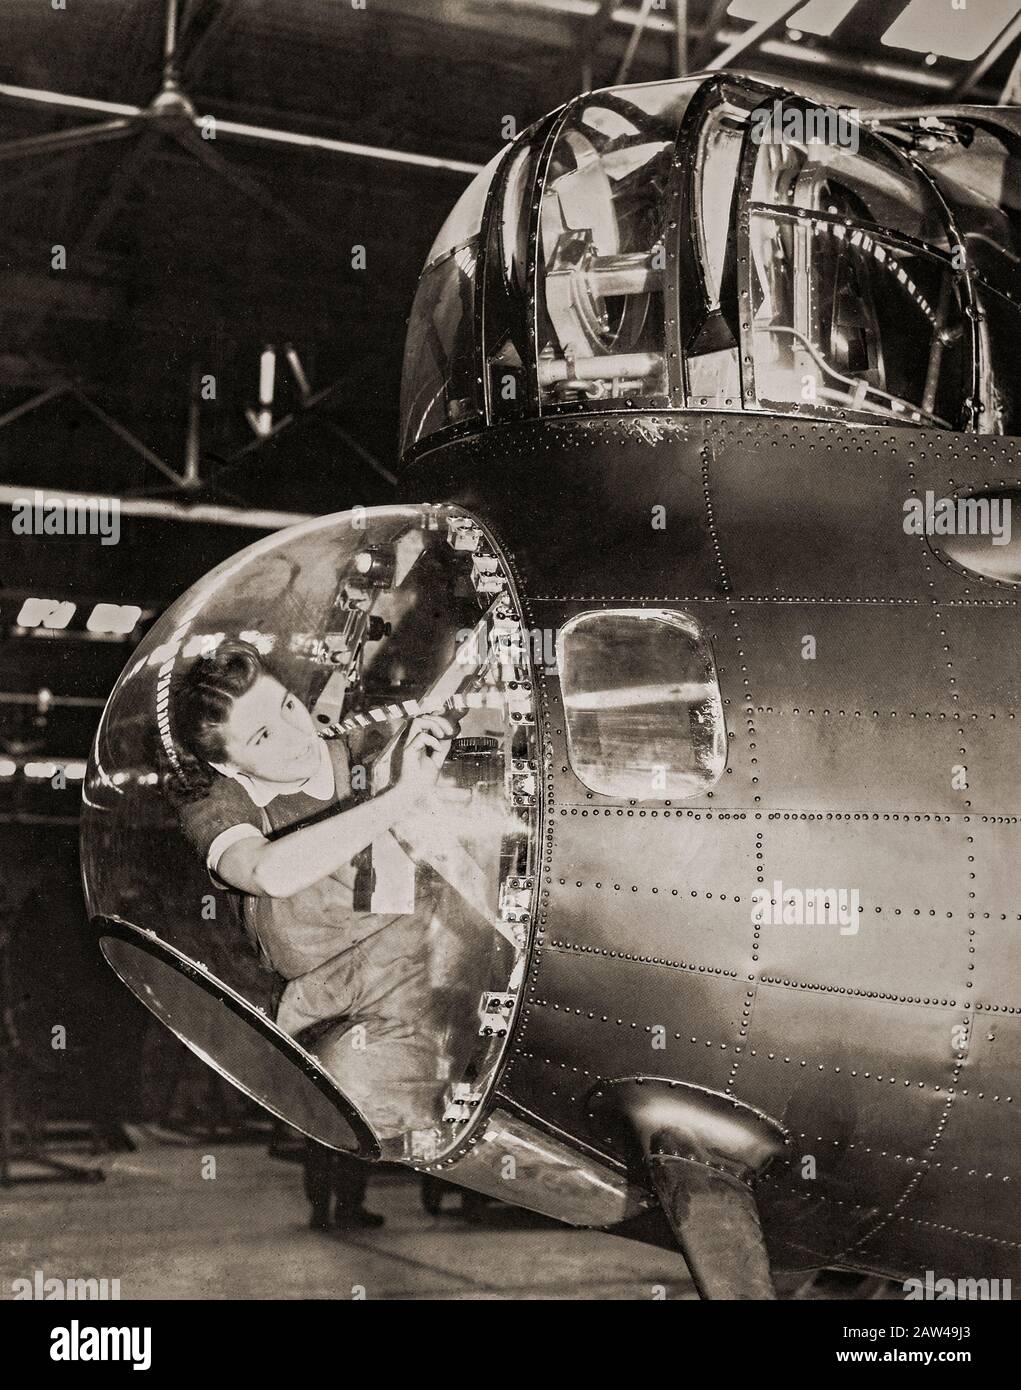 Un mécanicien instrumental WAF dans le dôme des bombardiers à l'étroit qui travaille sur le pilote automatique d'un Lancaster Bomber. La WAF (Women's Auxiliary Air Force) a été créée le 28 juin 1939 et les femmes recrutées dans la WAF ont reçu une formation de base. Les WAFA n'ont pas servi d'équipage, mais étaient actifs dans l'emballage en parachute et la création de ballons de barrage en plus d'effectuer des tâches de restauration, météorologie, radar, entretien d'aéronefs, transport, communications, y compris le téléphonage et télégraphique sans fil. Banque D'Images